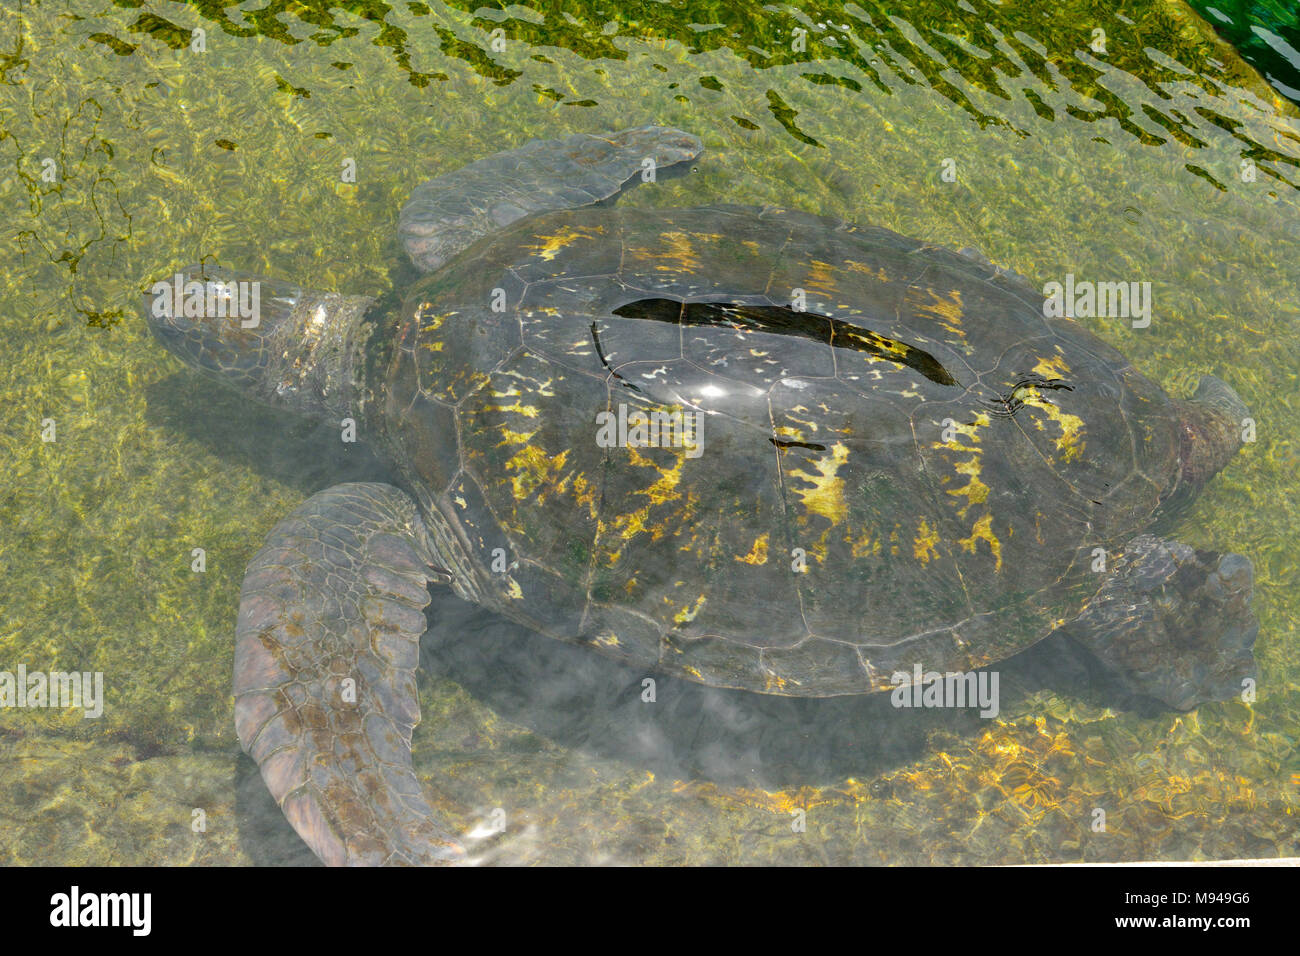 Grüne Meeresschildkröte (Chelonia mydas) unter Wasser. Stockfoto